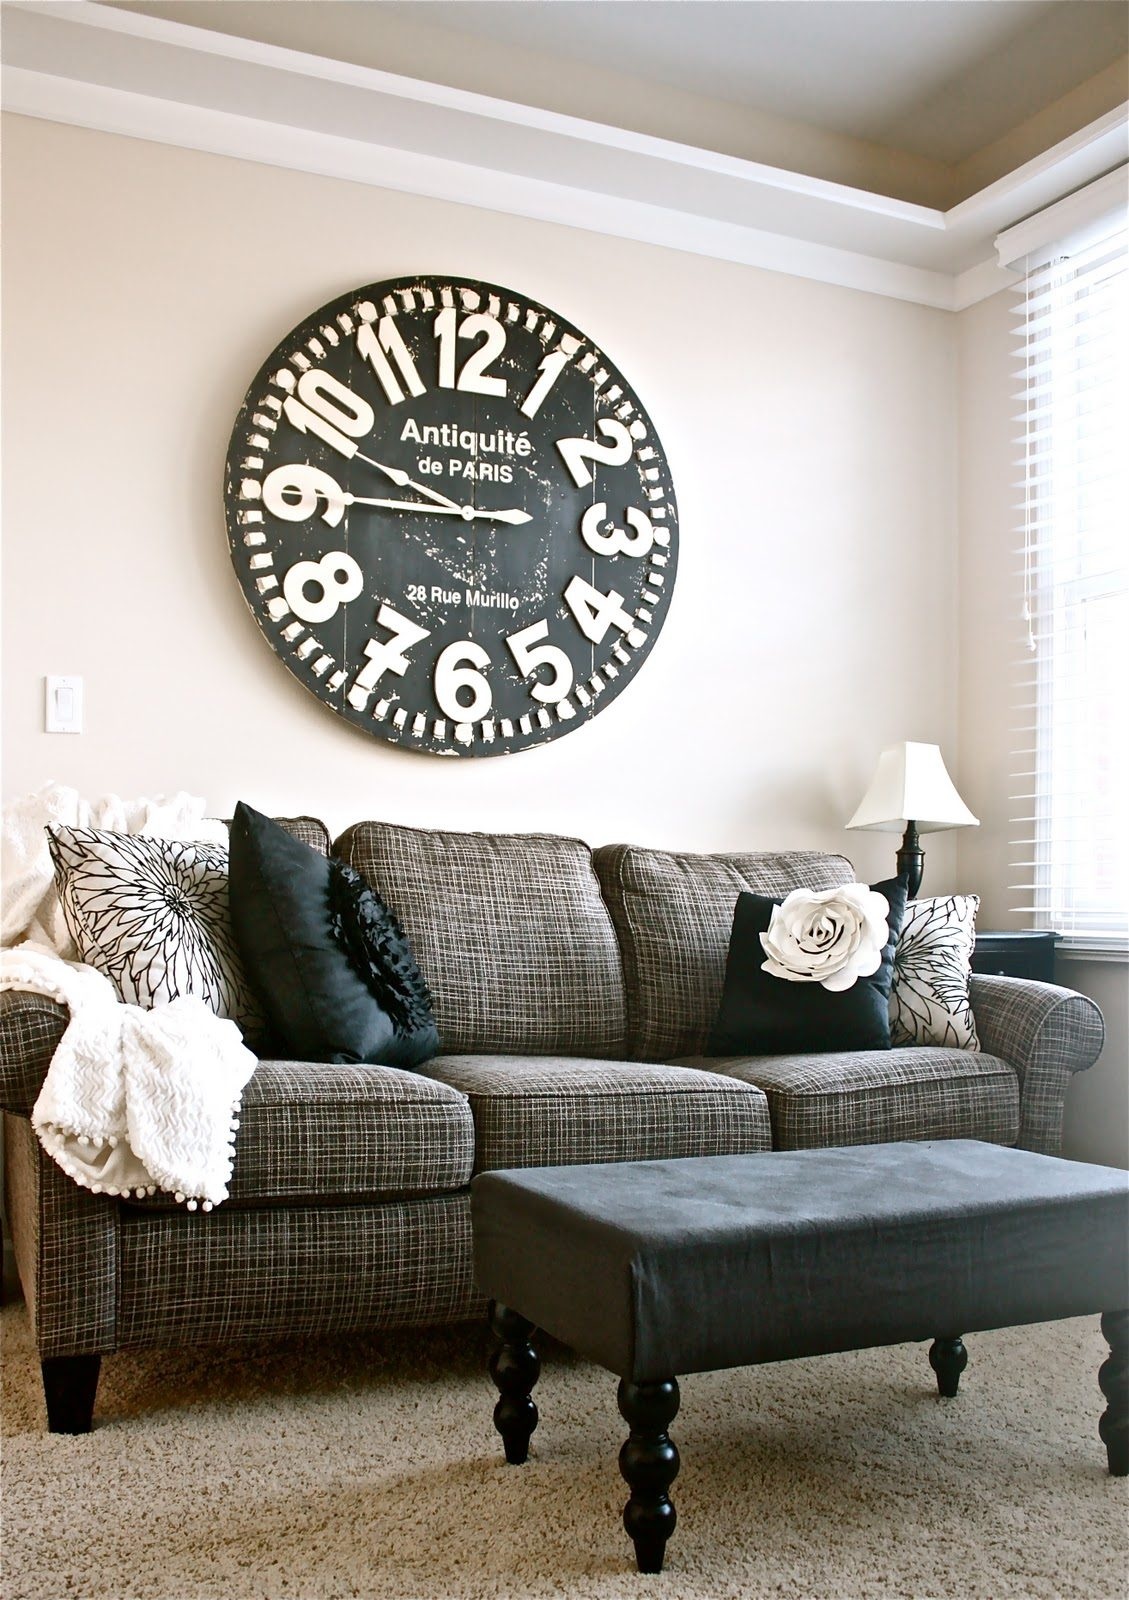 Дизайн стены над диваном в гостиной: идеи оформления и декора, советы дизайнера